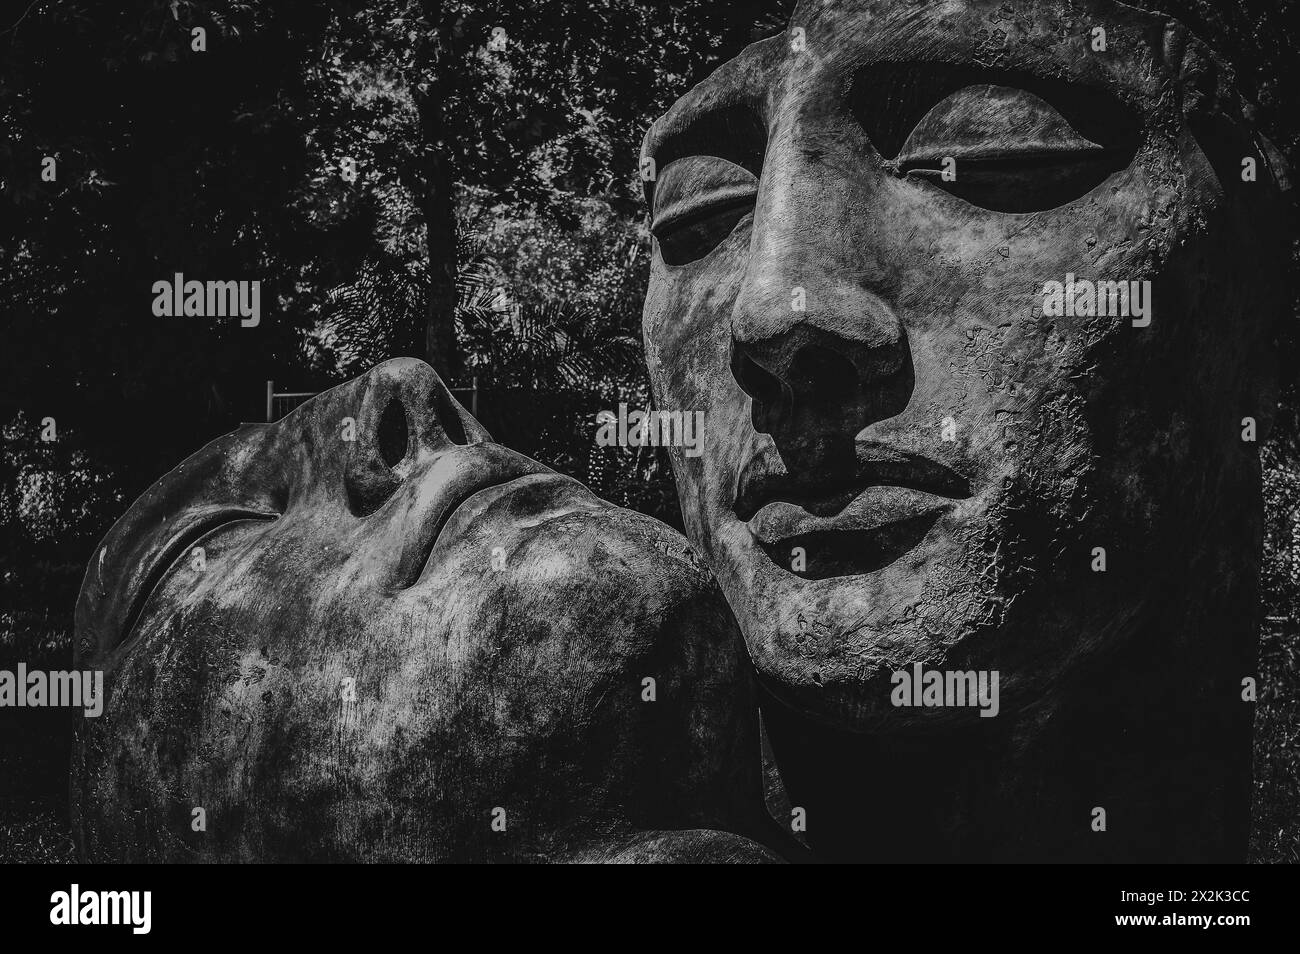 Cette image en noir et blanc capture une grande sculpture texturée du visage d'un homme couché sur le côté, sur fond naturel d'arbres. Banque D'Images